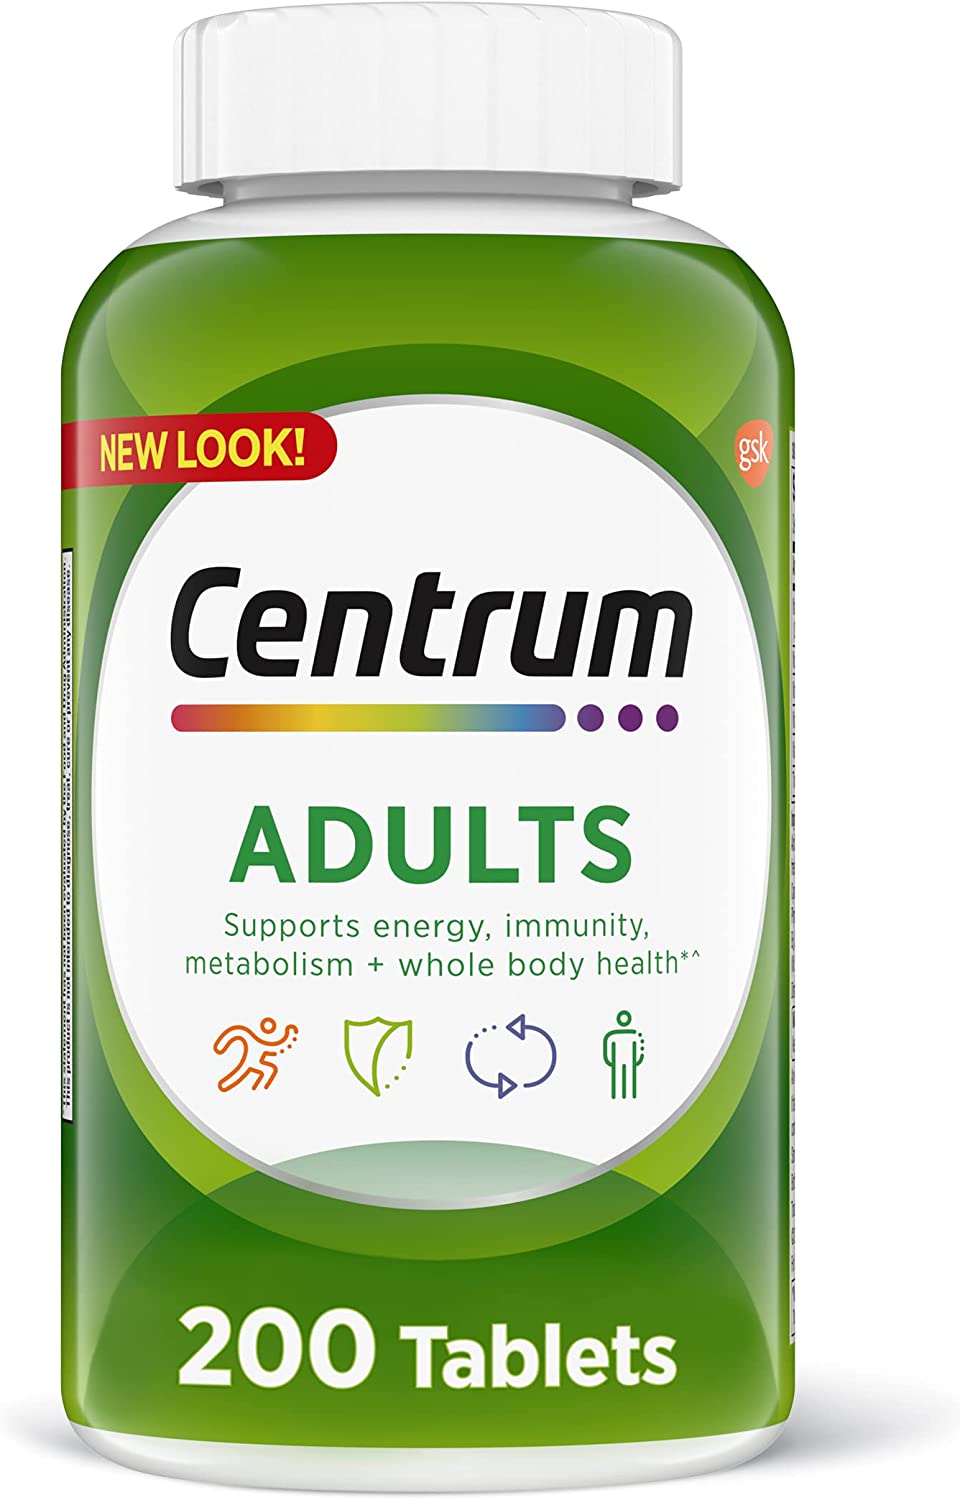 Centrum Energy Boosting Adult Multi-Vitamin, 200-Count